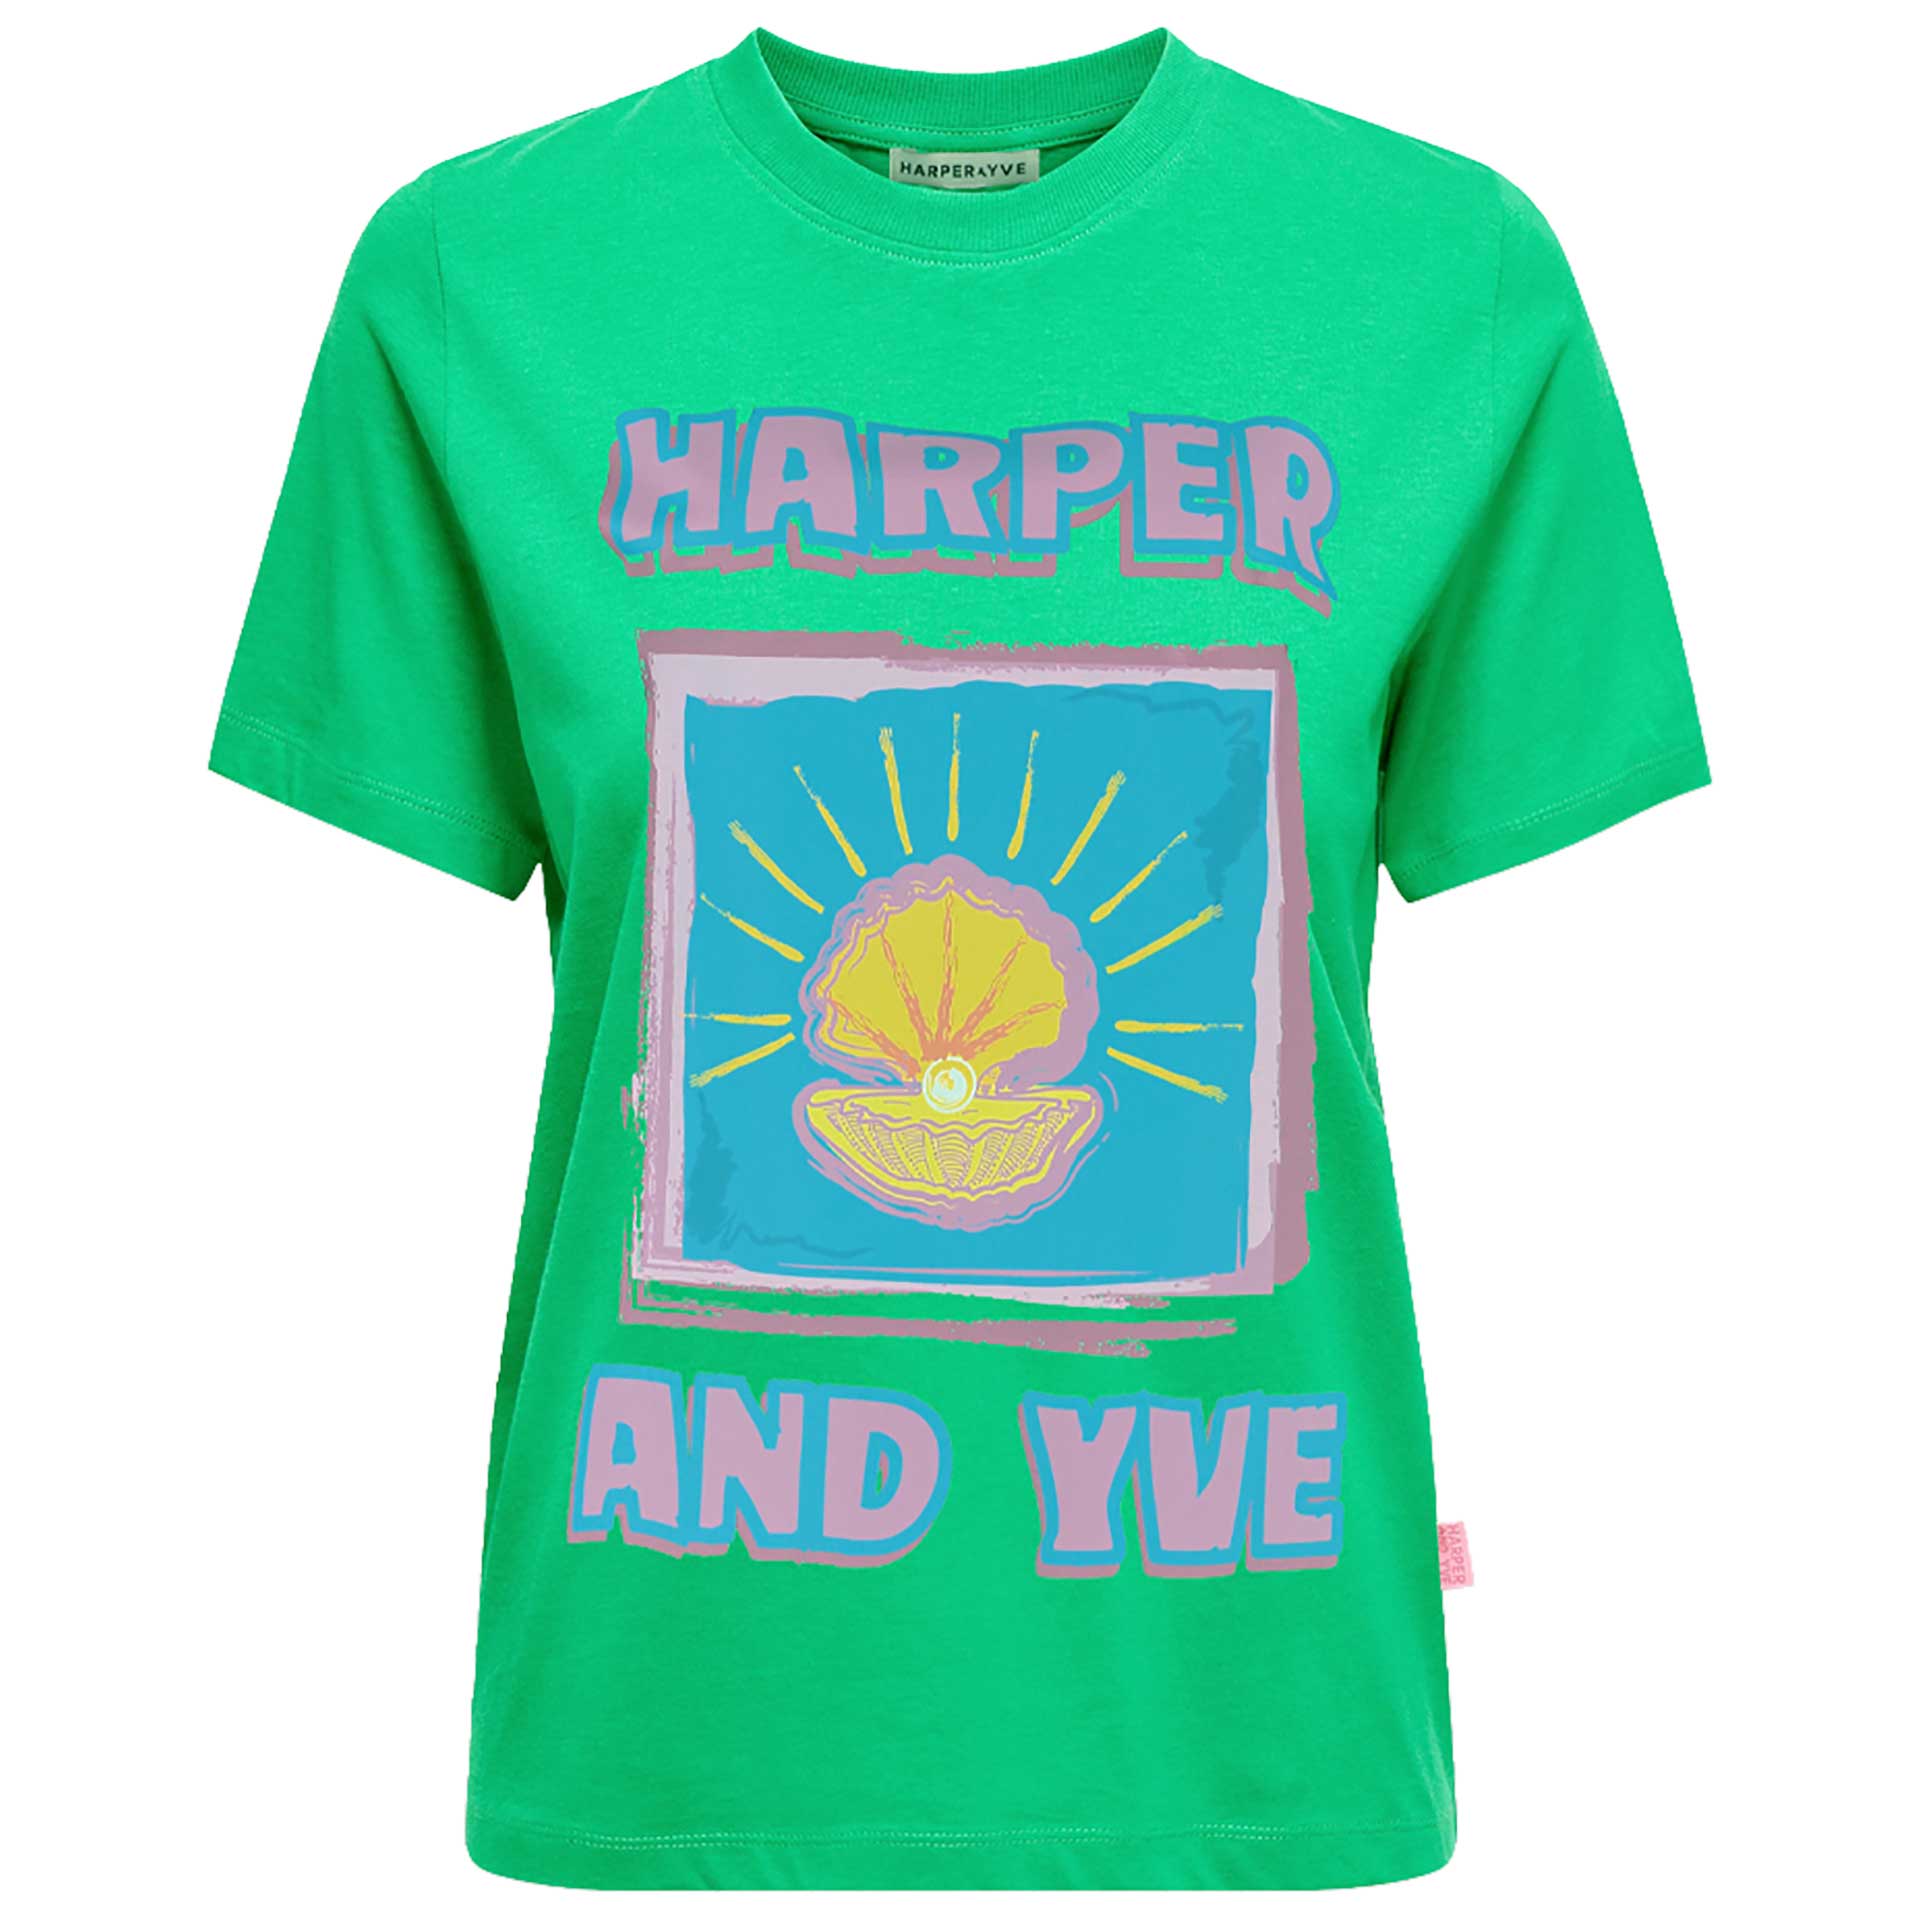 Harper & Yve T-Shirt Shell 1